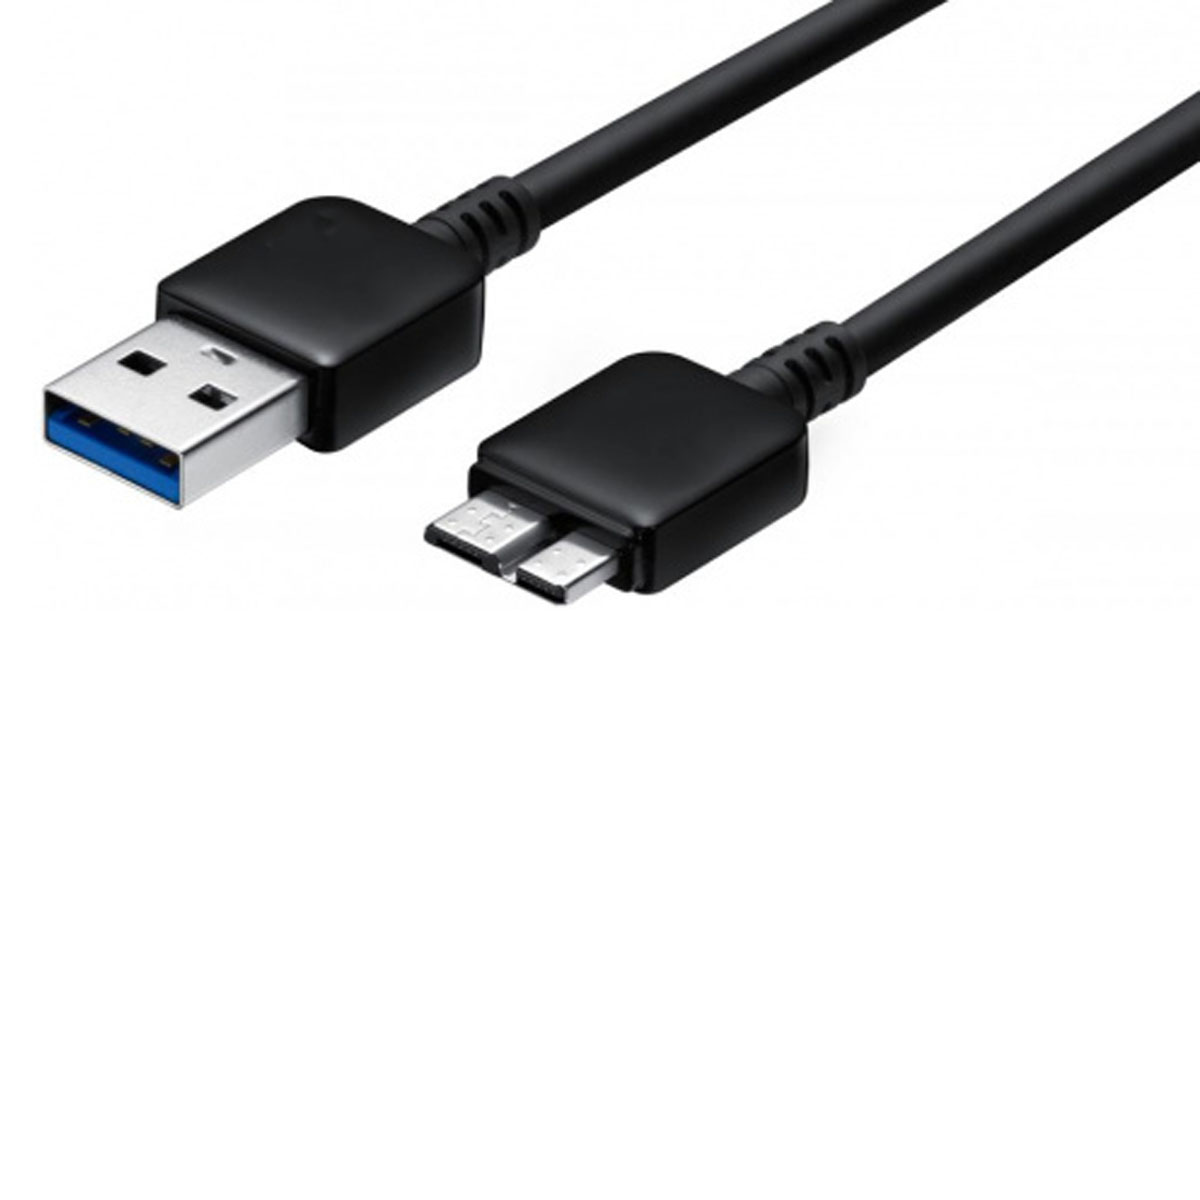 Кабель USB для SAMSUNG Galaxy Note 3, длина 1 метр, цвет черный